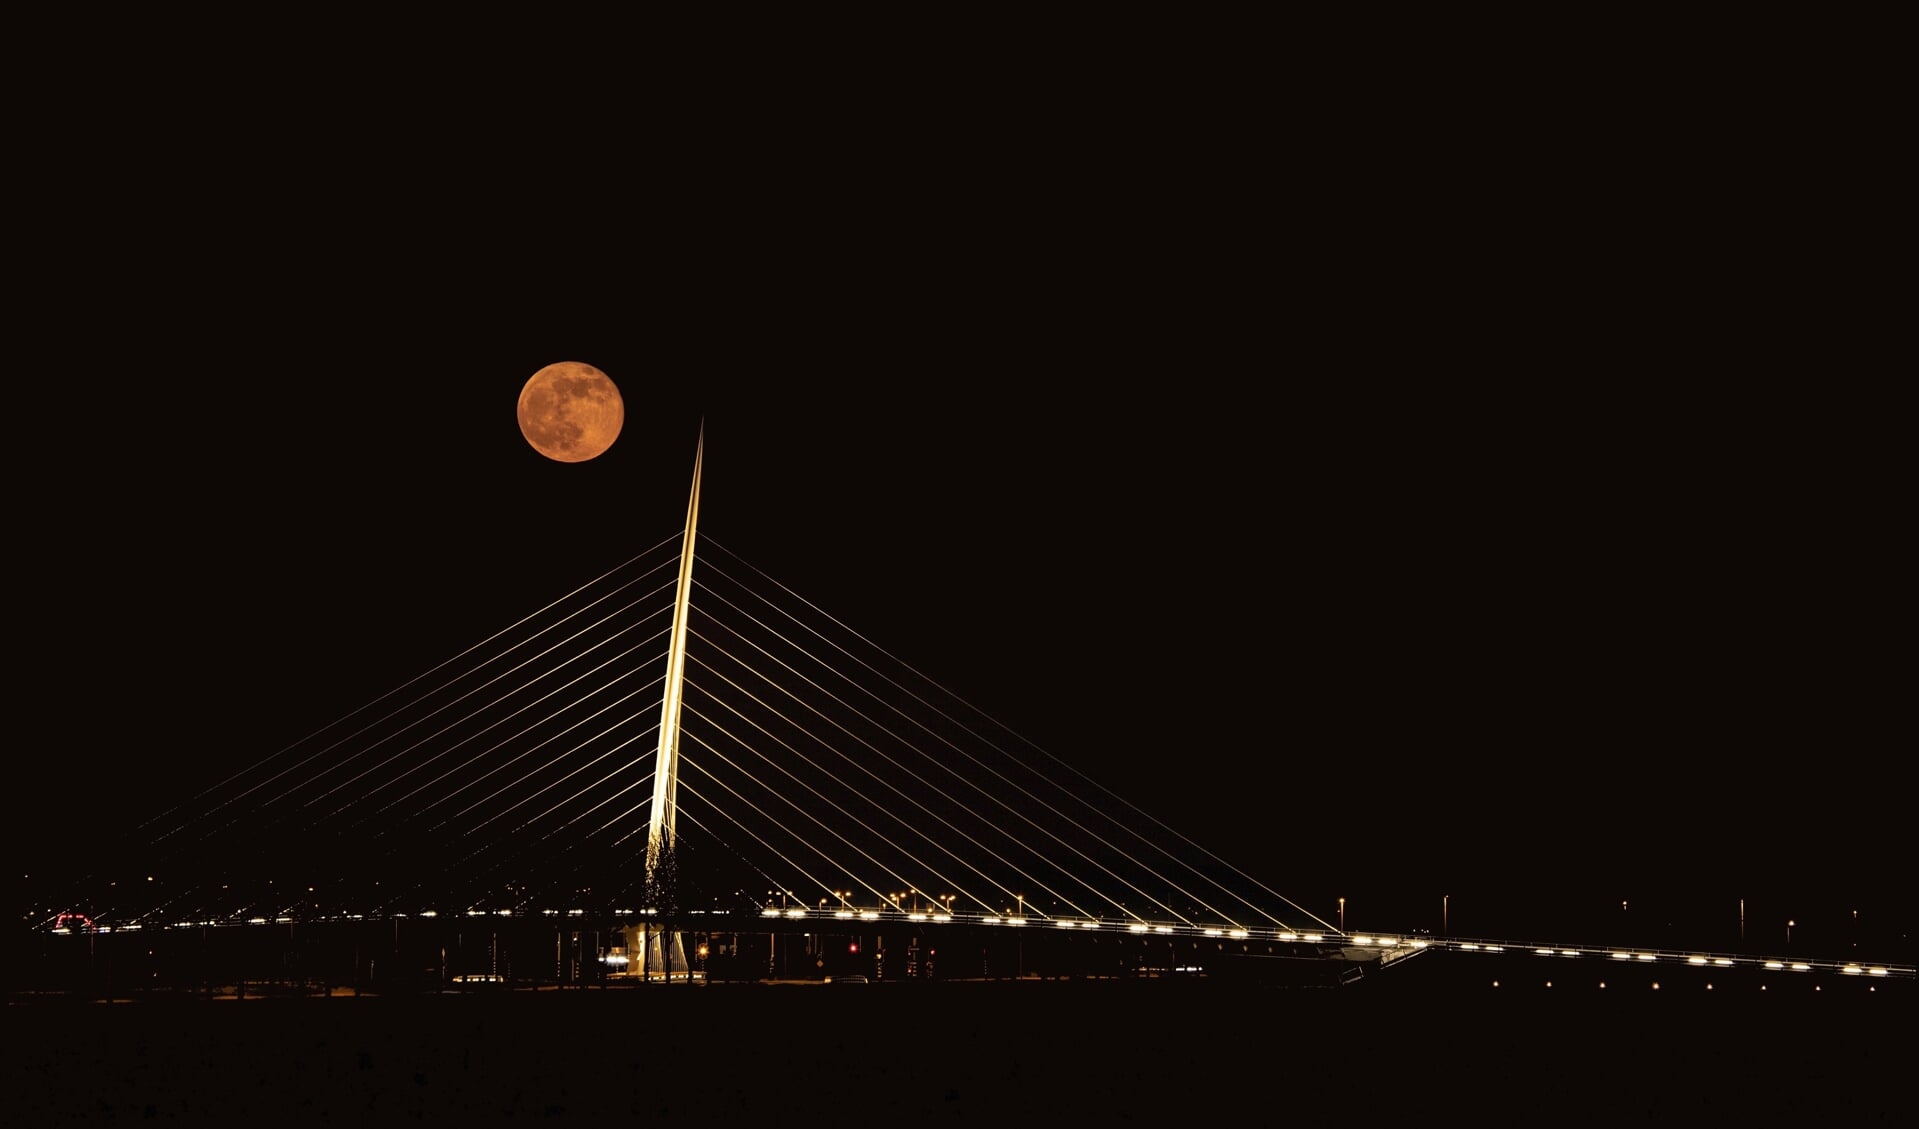 De winnaar van deze maand is Jan Zandvliet met een nachtelijke foto van Calatrava De Citer met een prachtige volle maan er bij, alsof die een klap gaat krijgen van de brug. 